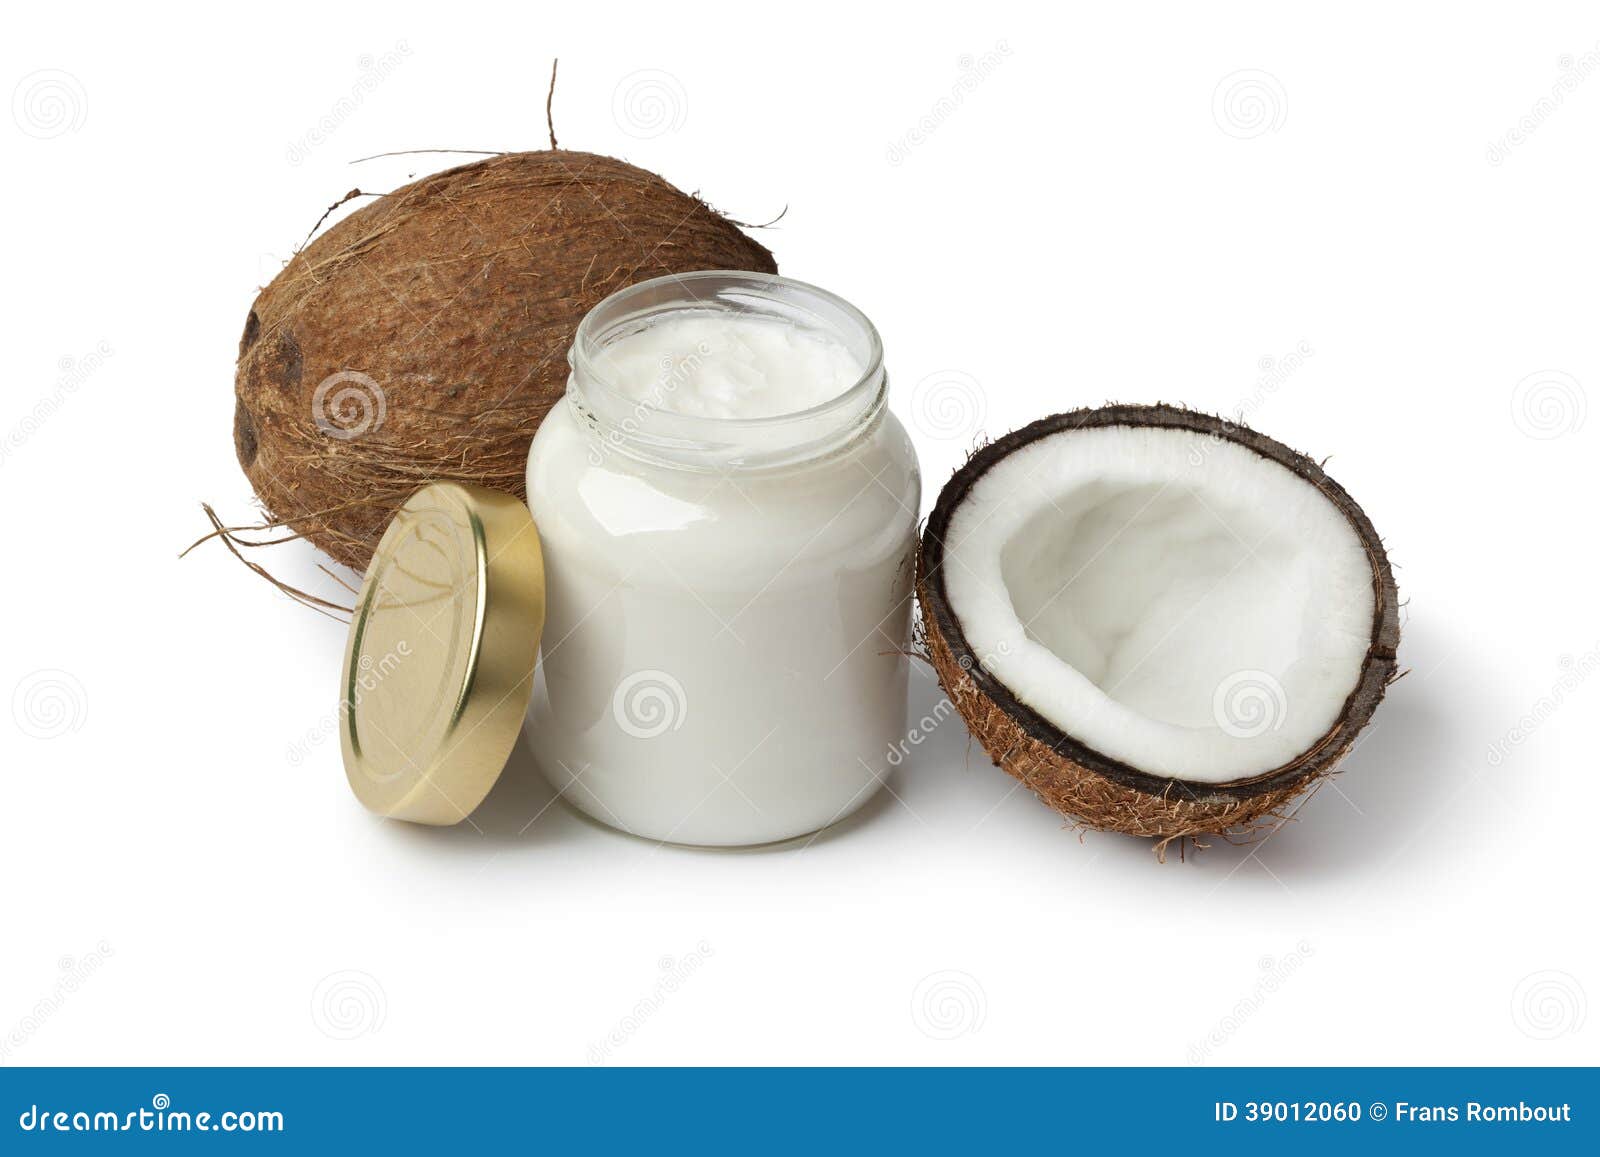 Kokosnussöl und frische Kokosnuss auf weißem Hintergrund